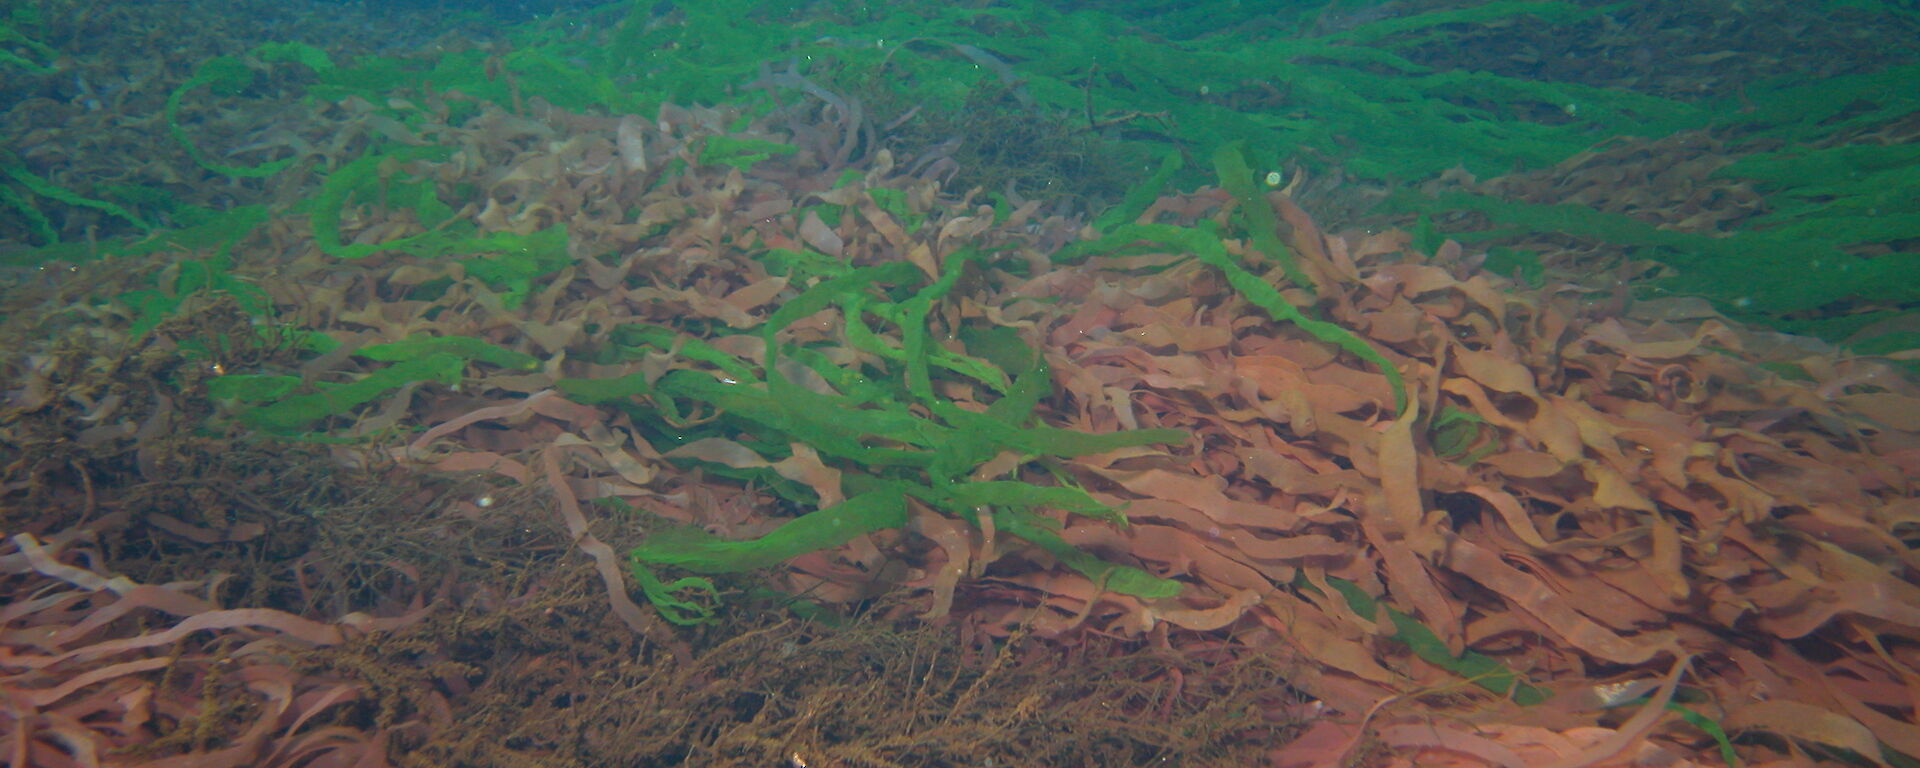 Seaweeds on the sea floor in Antarctica